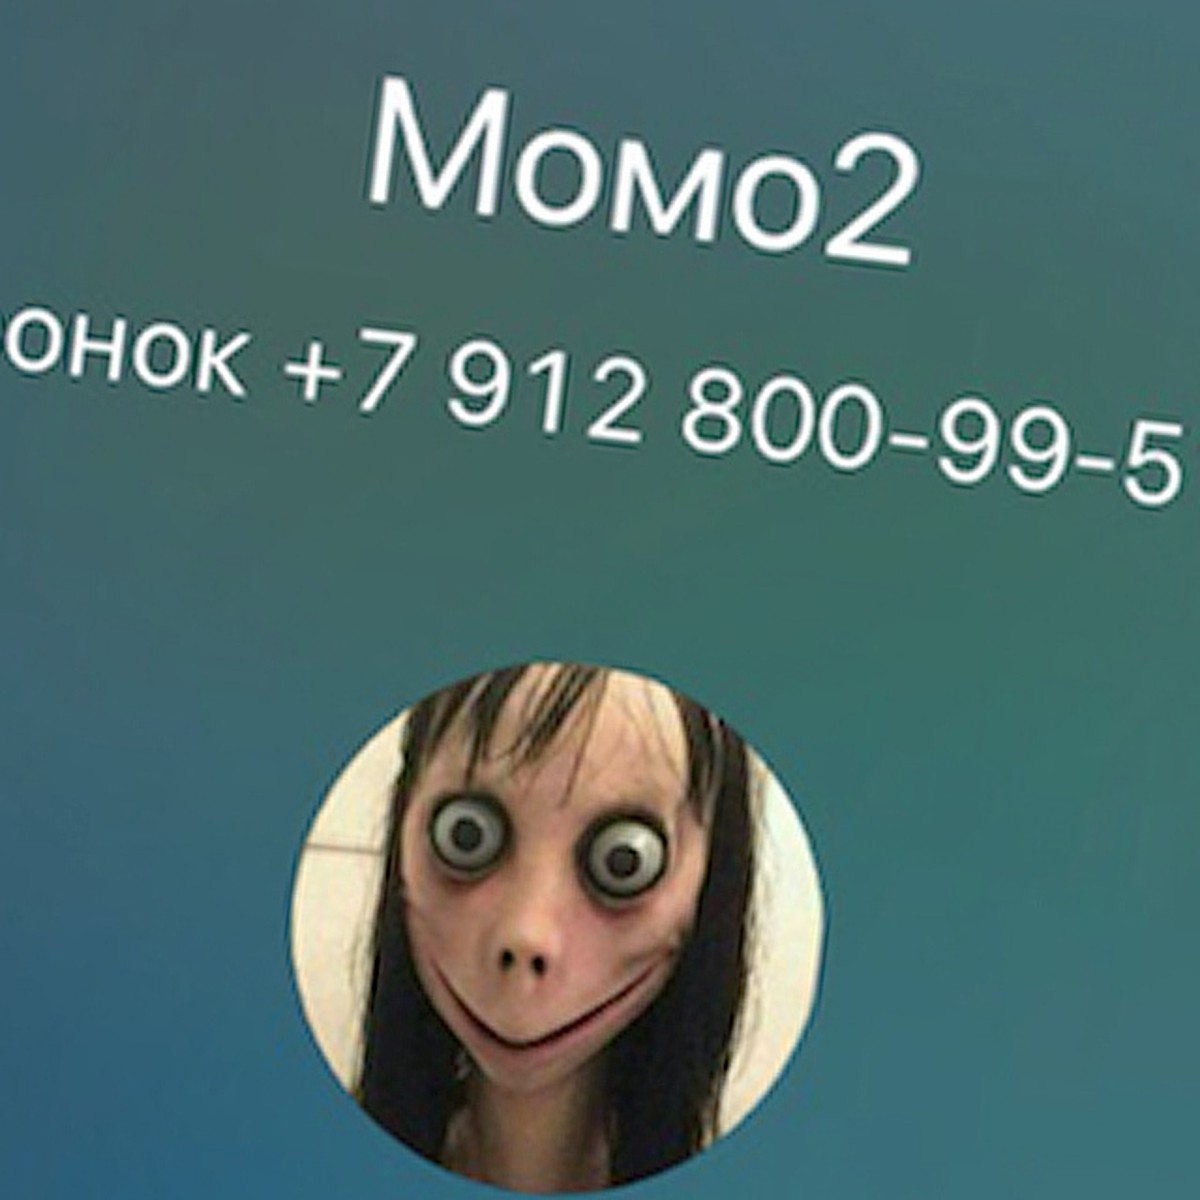 Номер момо в россии. Momo номер WHATSAPP В России. Номер МОМО. Настоящий номер Momo настоящий.